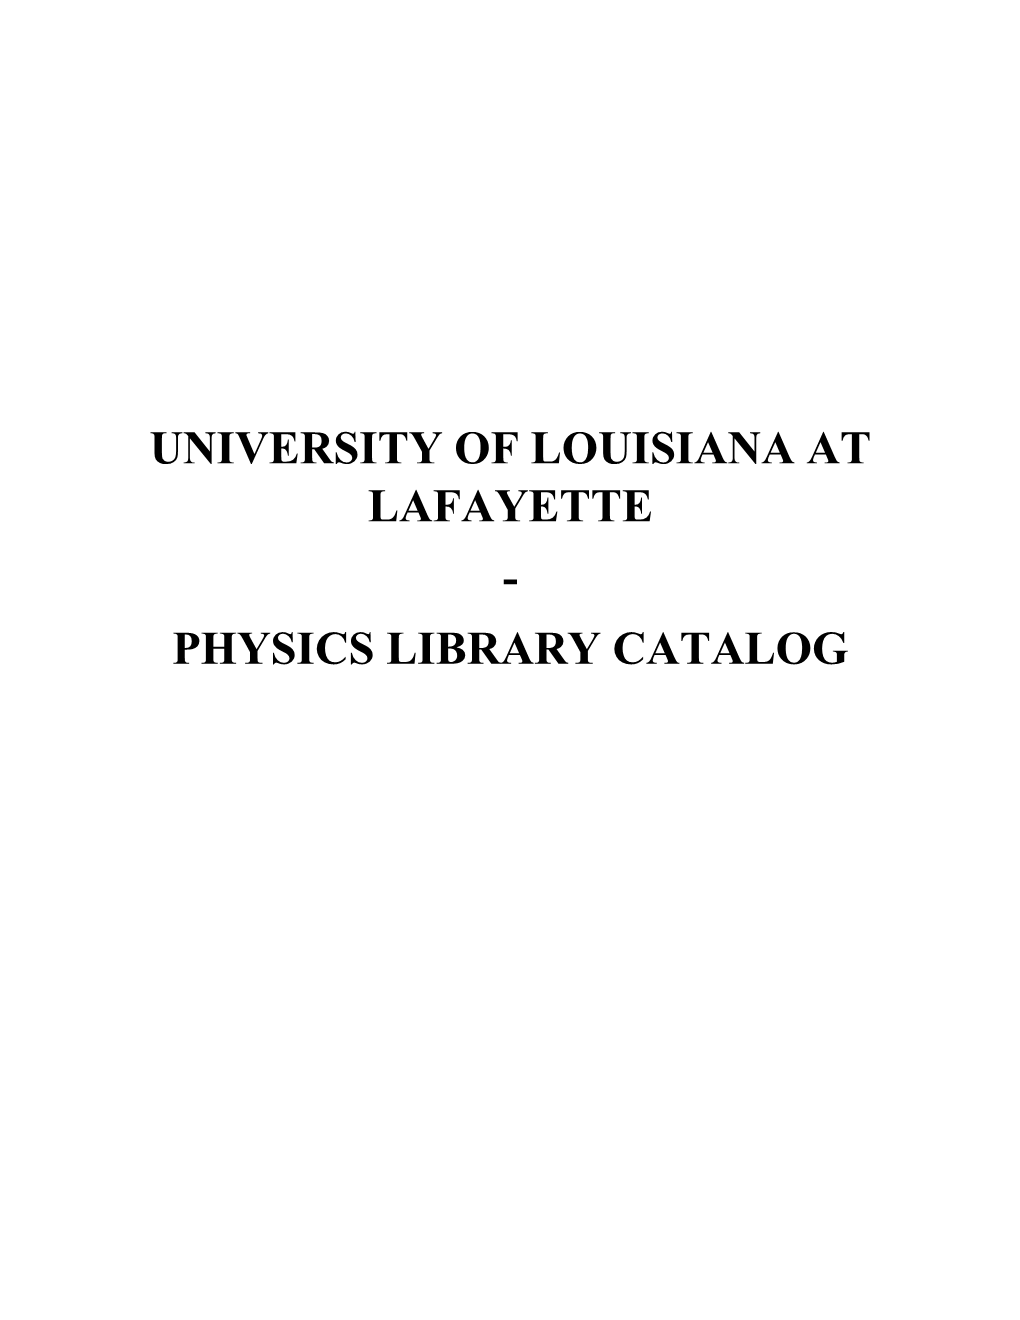 Physics Library Catalog